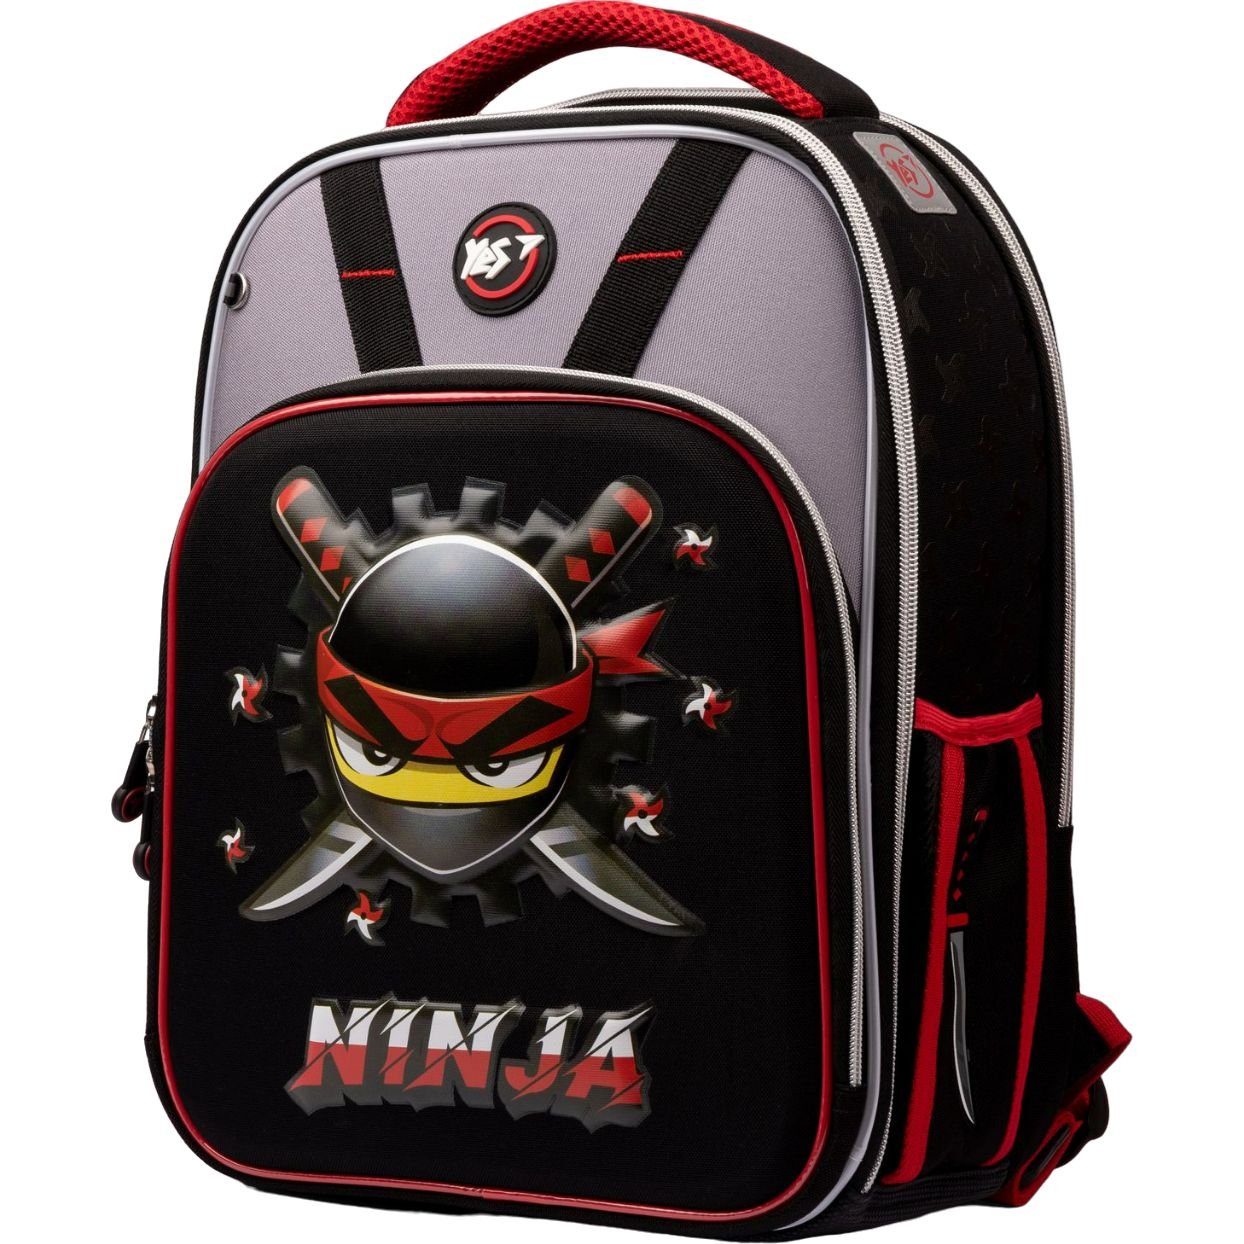 Фото - Шкільний рюкзак (ранець) Yes Рюкзак каркасний  S-78 Ninja, сірий з чорним  (559383)